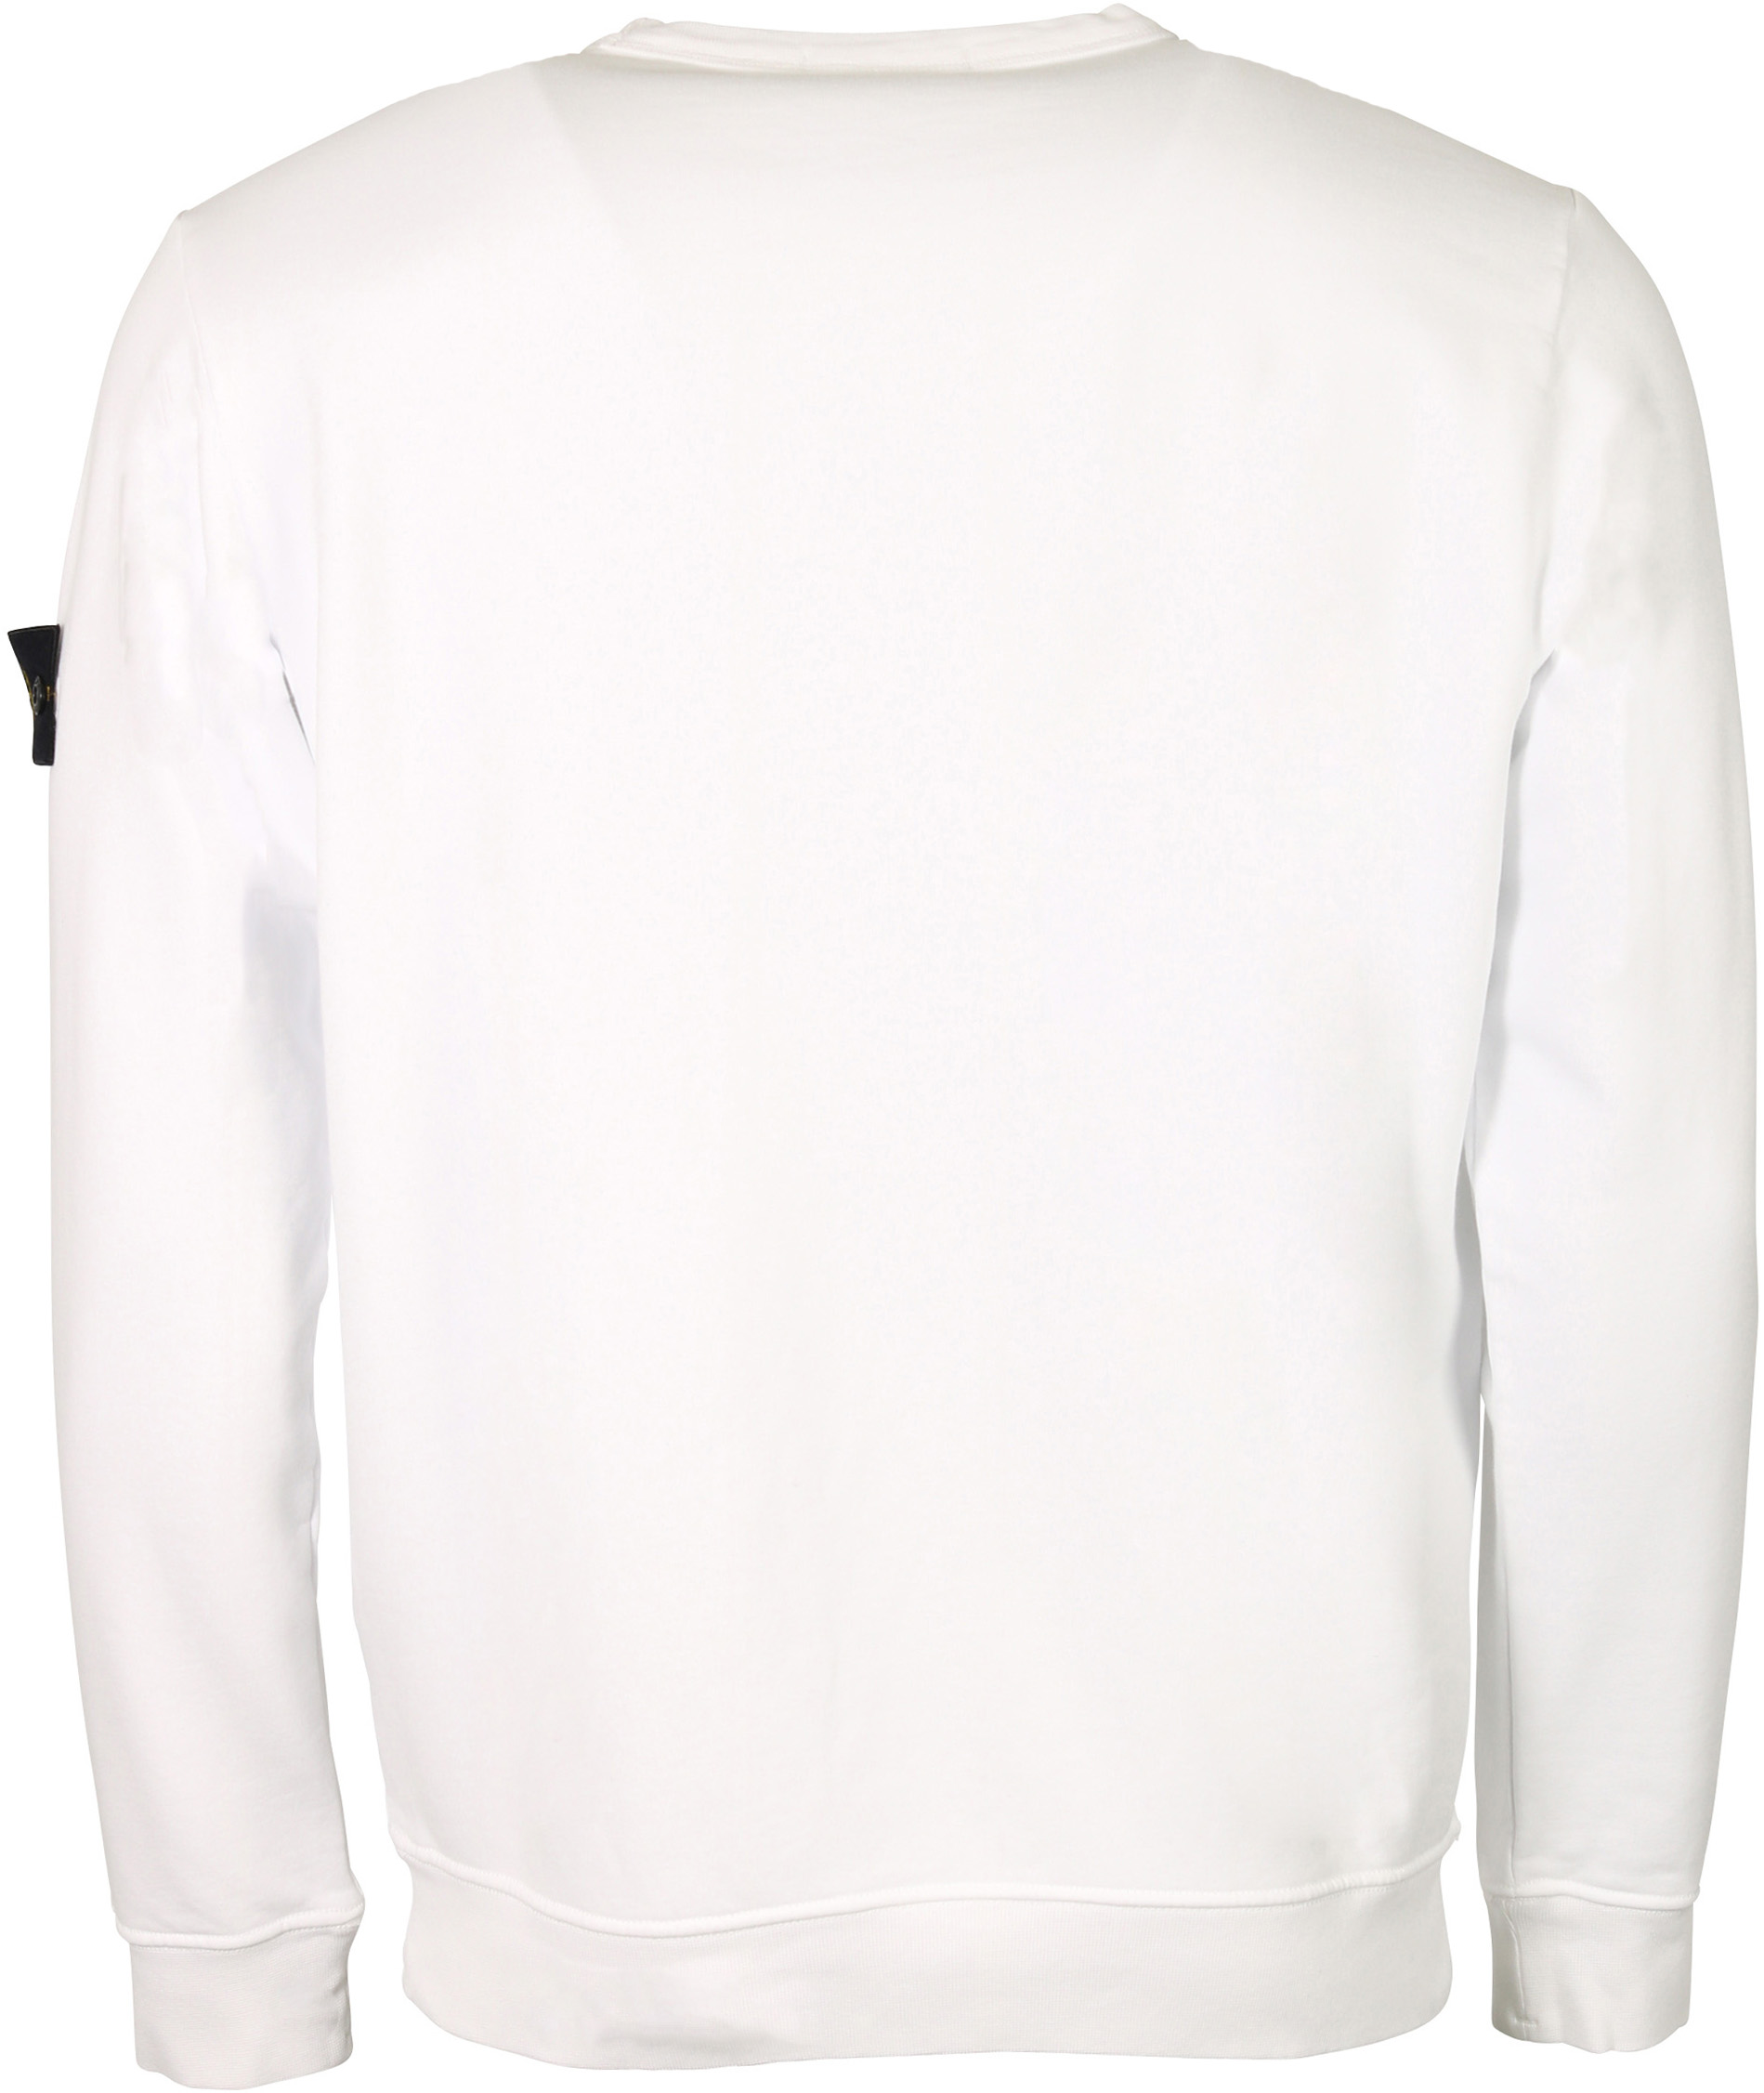 Stone Island Sweatshirt White S